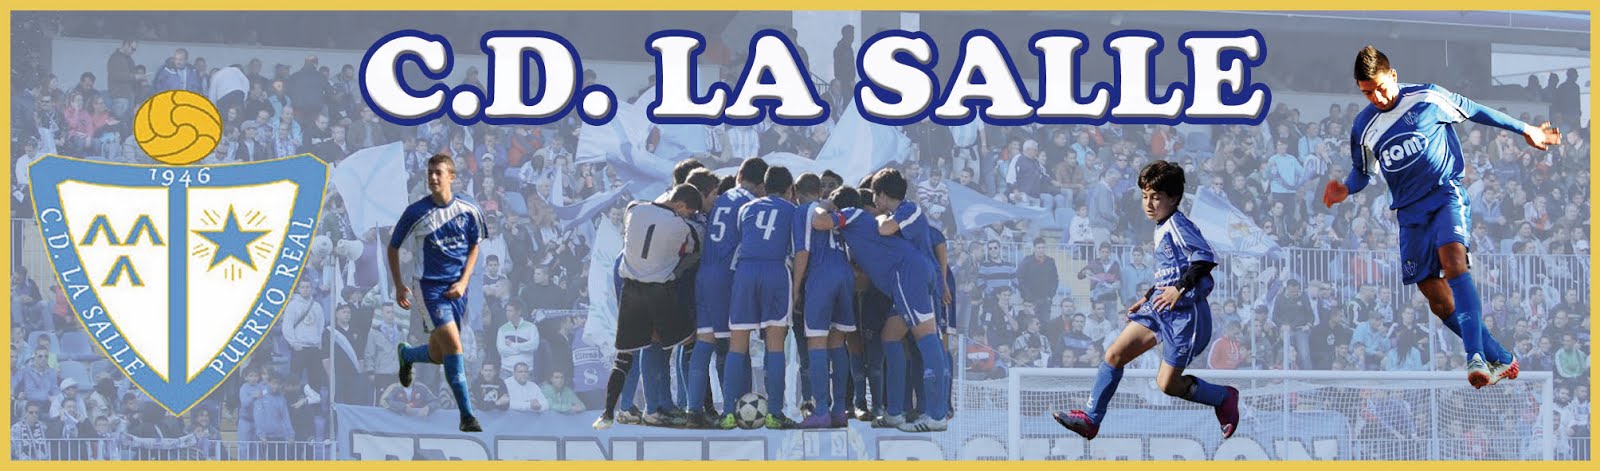 C.D. La Salle de Puerto Real - Temporada 2018/2019